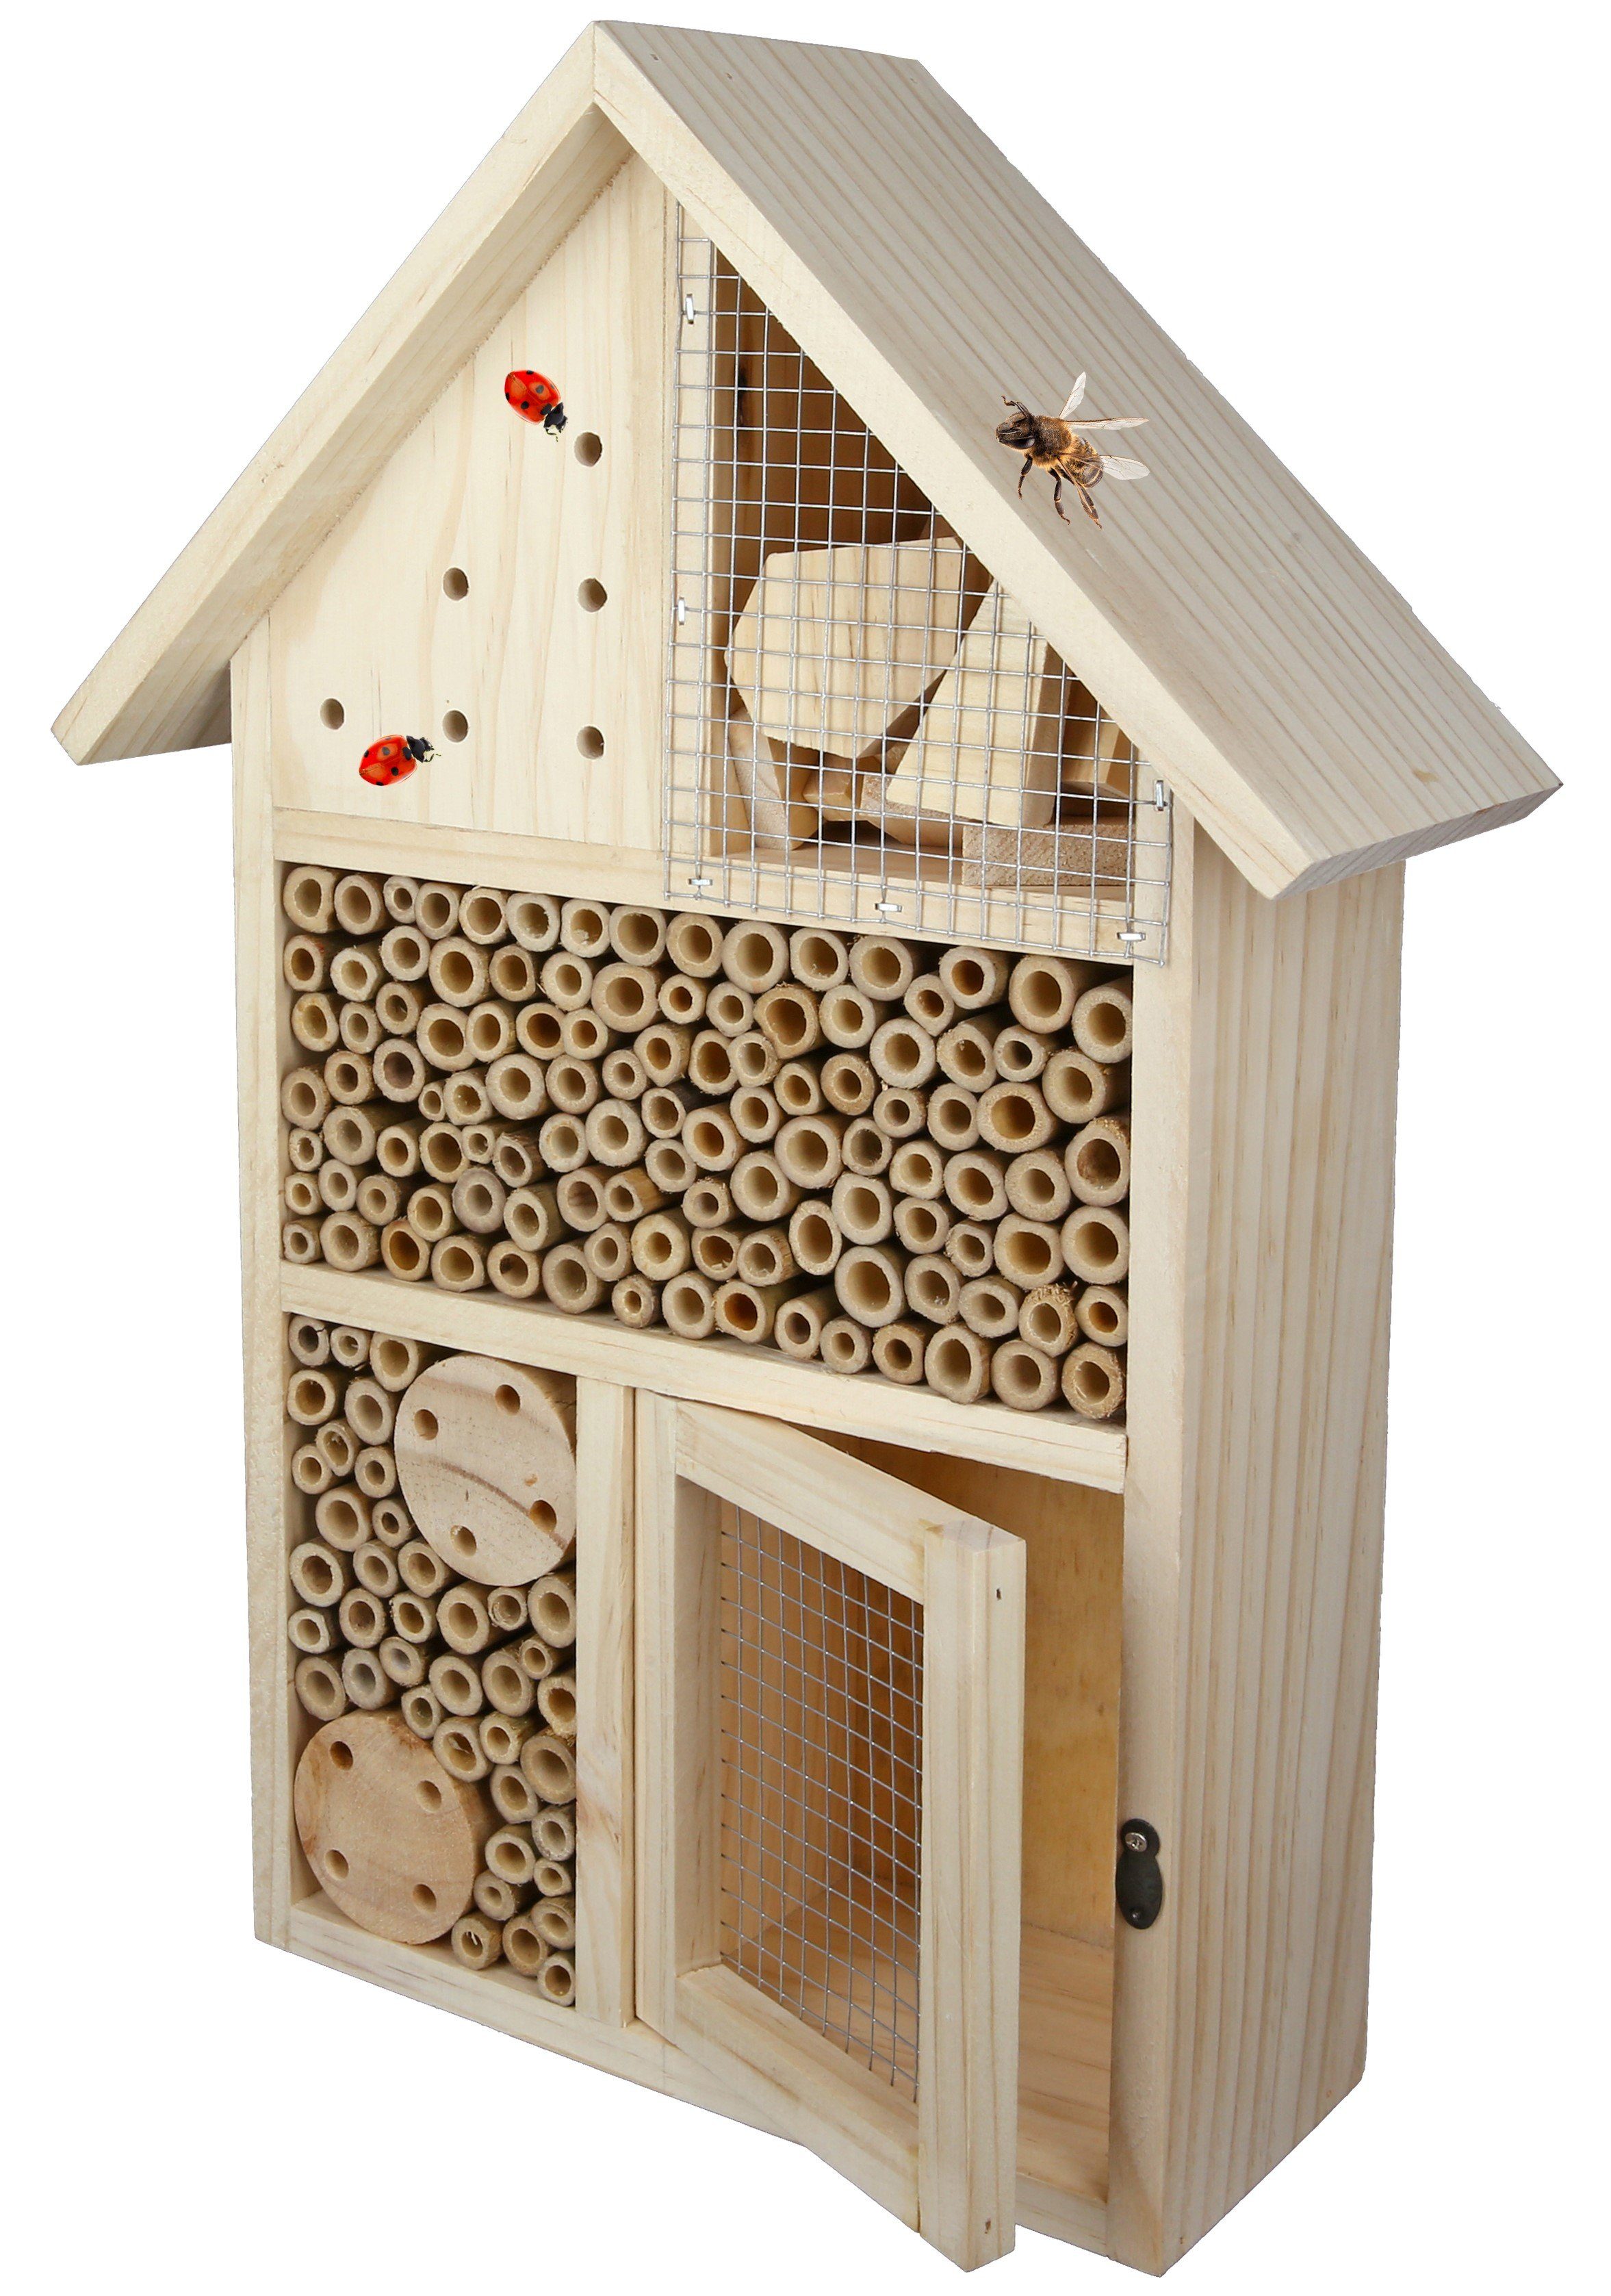 Cult at Home Insektenhotel Bienenhaus Insektenhotel groß – Höhe 38 cm - mit Klappe zum Befüllen – Nistkasten und Bienenhotel aus Holz